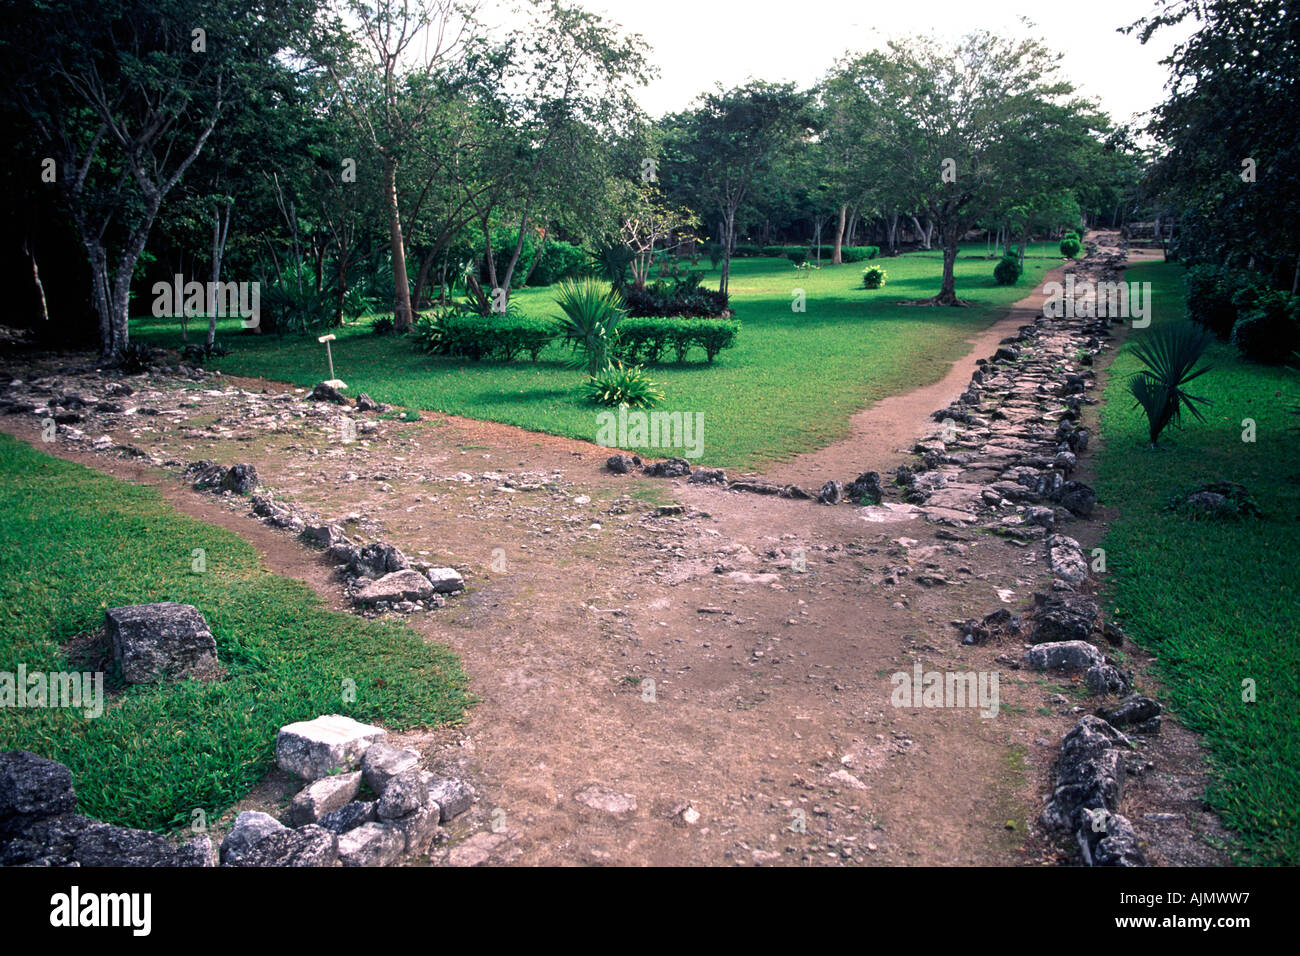 Ruines de la San Gervasio site archéologique maya sur l'île de Cozumel au Mexique. Banque D'Images